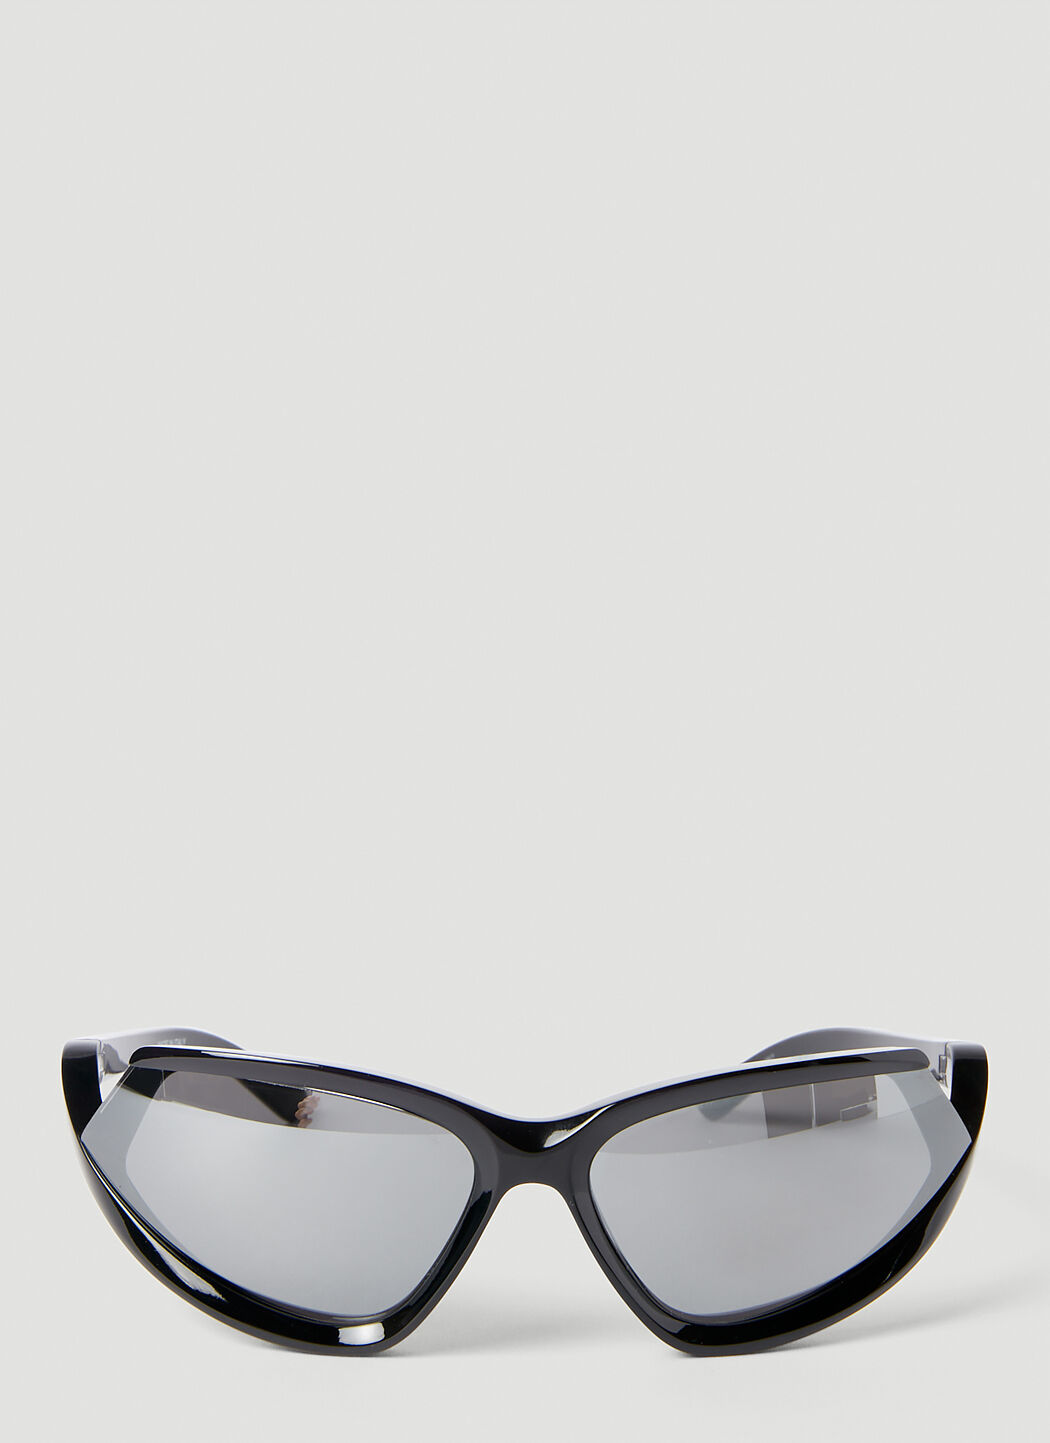 Balenciaga X-pander 猫眼形太阳镜 黑色 bcs0153001